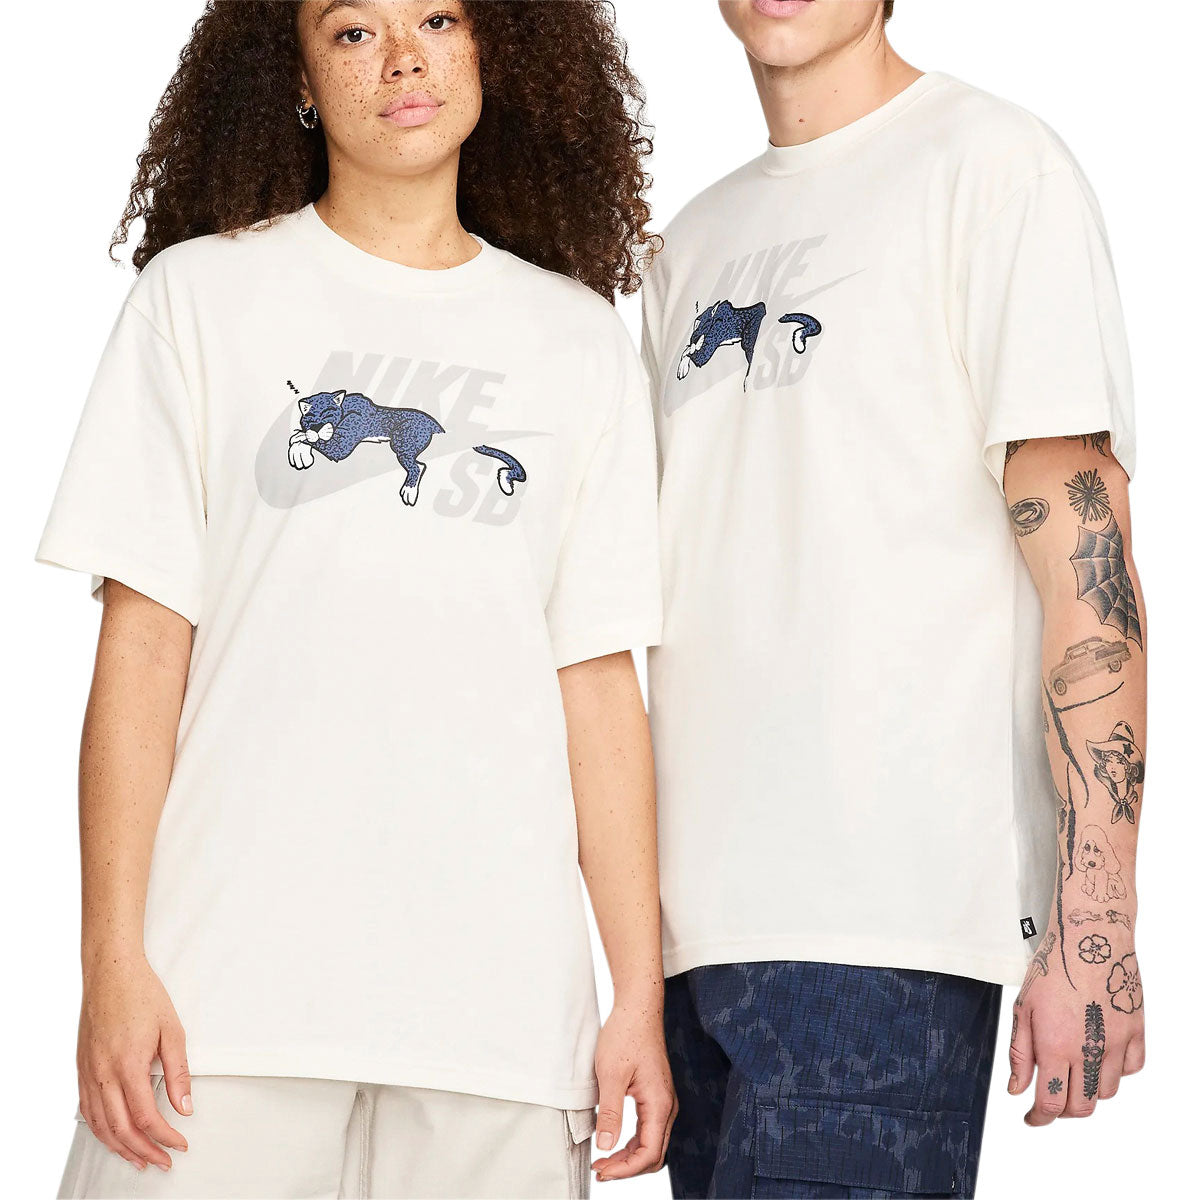 Nike SB Sleepy Panther T-Shirt - Sail image 2